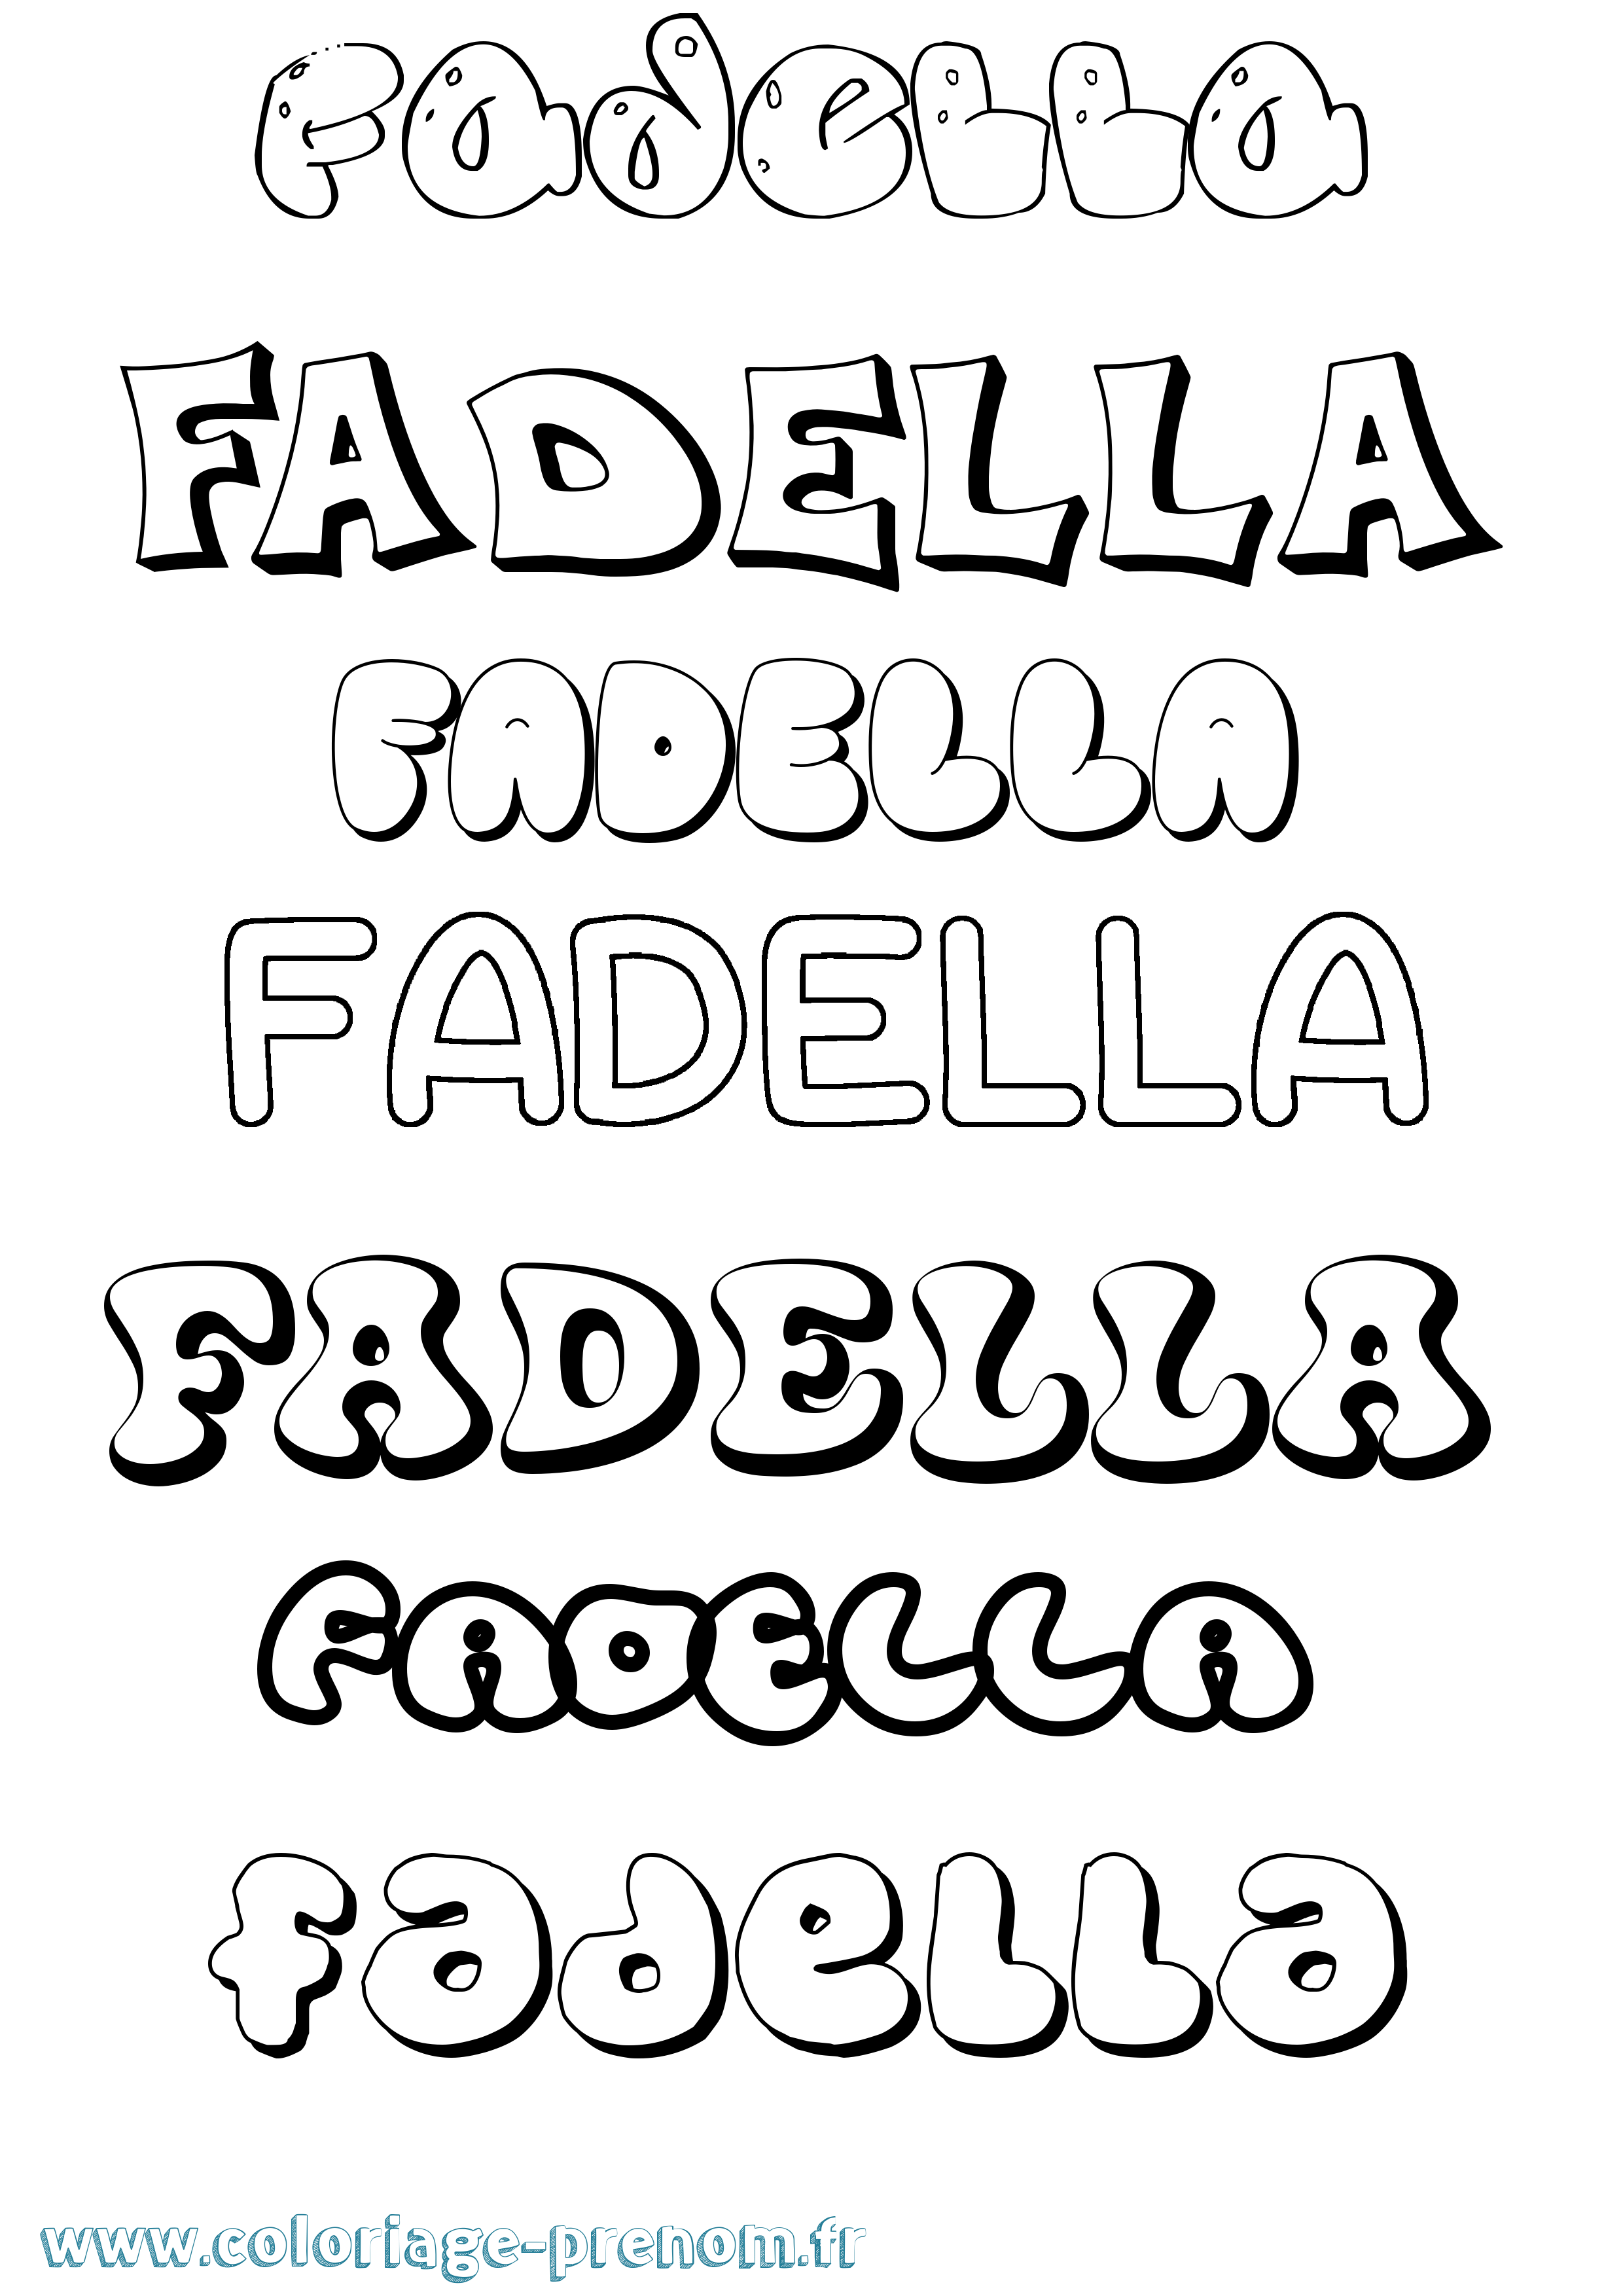 Coloriage prénom Fadella Bubble